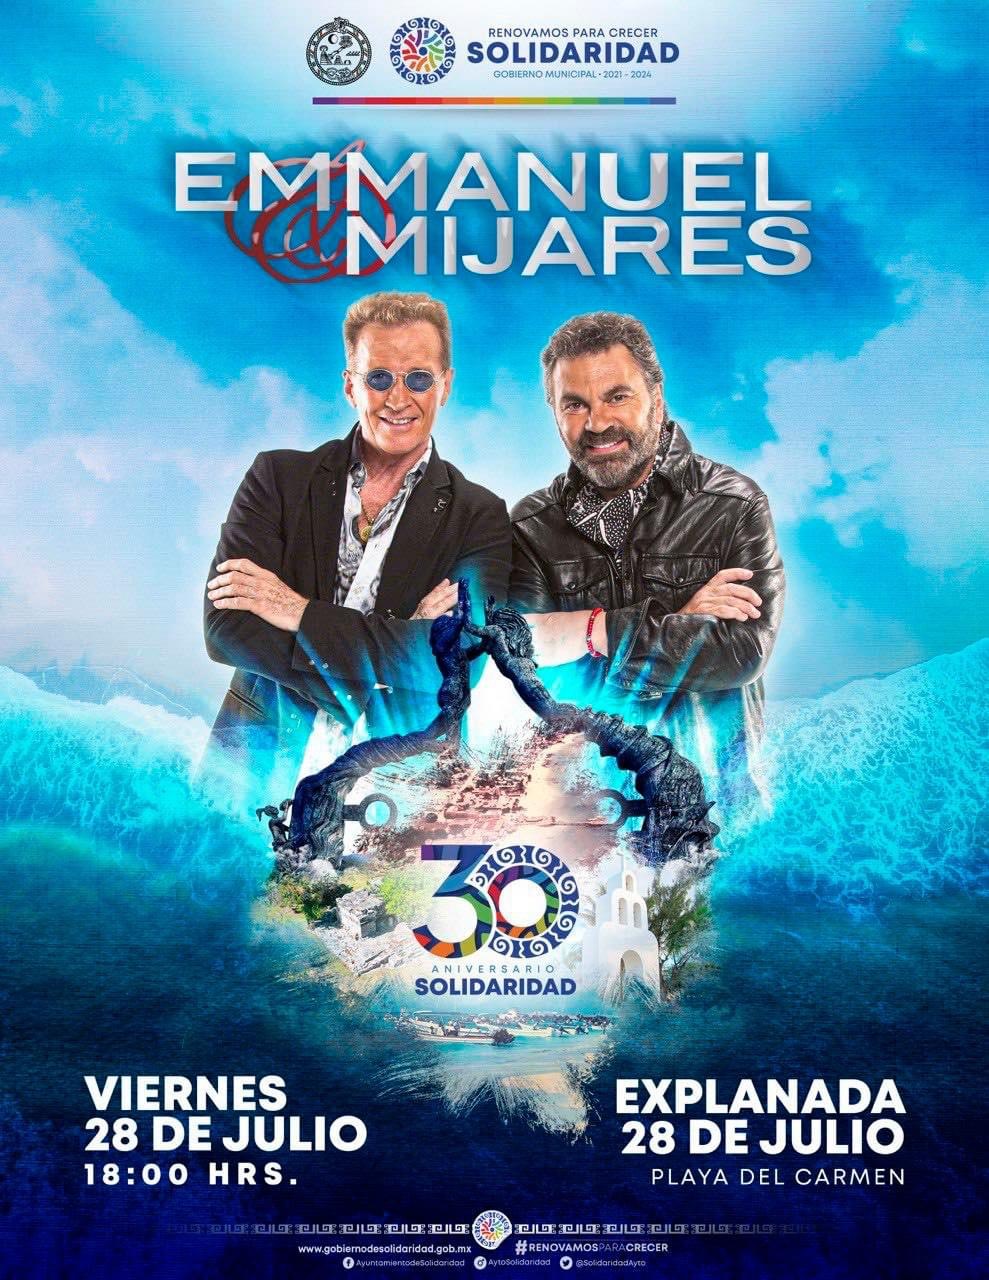 Emmanuel y Mijares, dos de los cantantes más sobresalientes en las últimas décadas de México